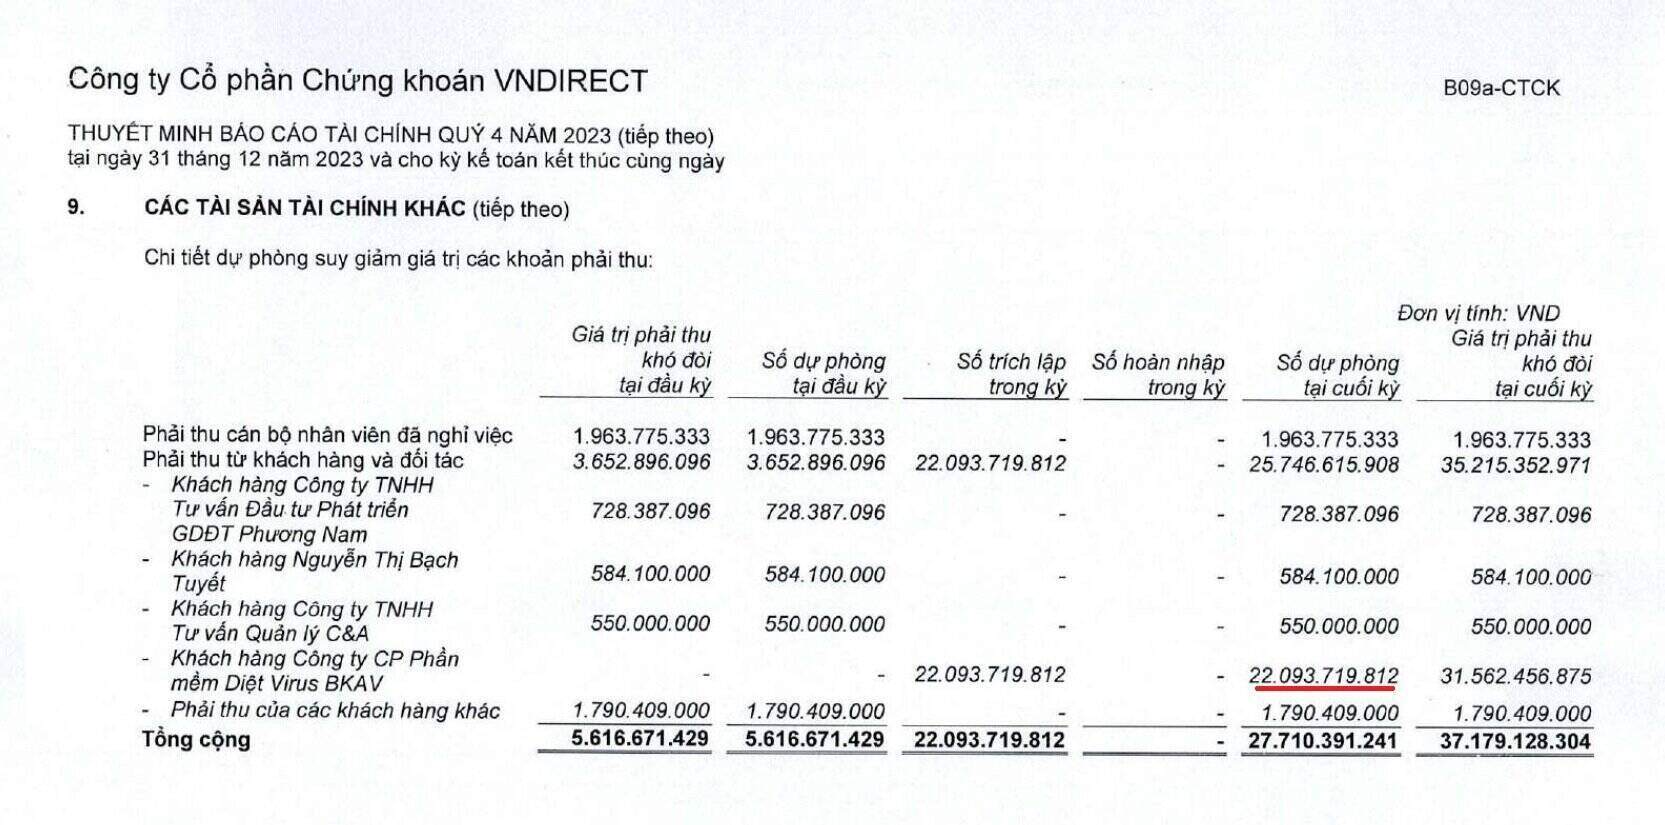 VIDIRECT đã trích lập dự phòng hơn 22 tỉ đồng đối với khoản phải thu từ BKAV Pro. Ảnh: BCTC quý IV/2023 của VNDIRECT